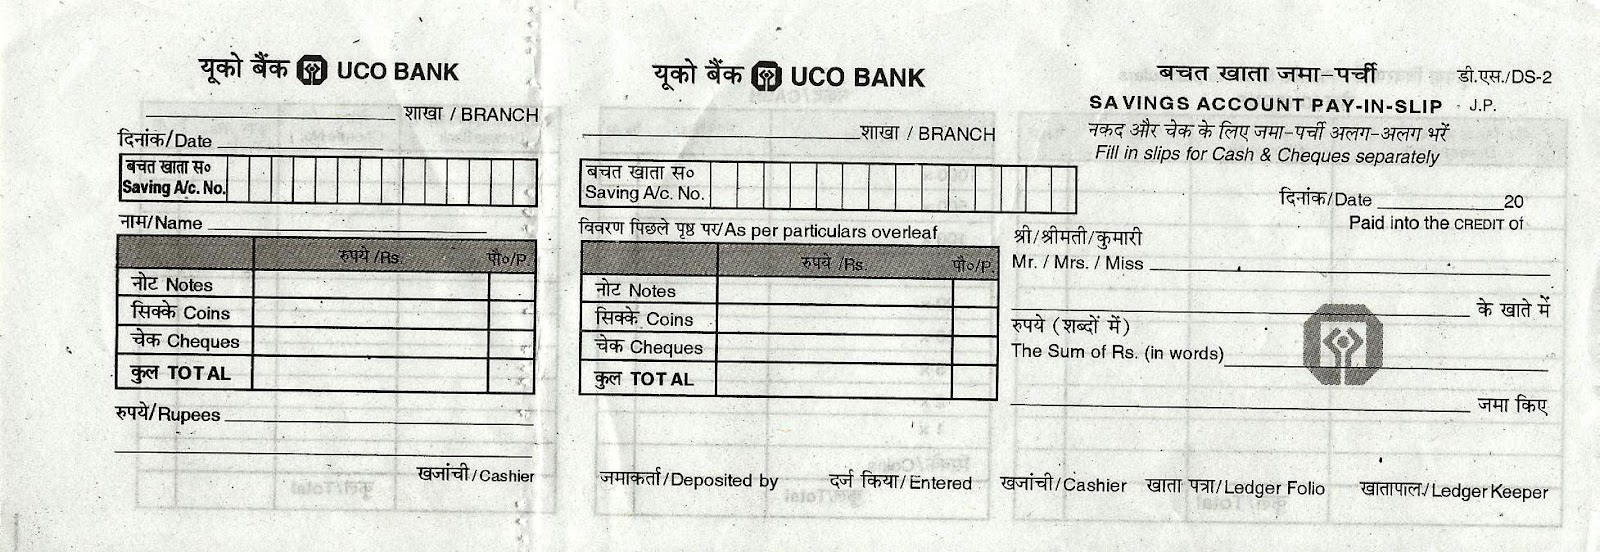 Bank Of India Cash Deposit Slip Pdf Downloadl